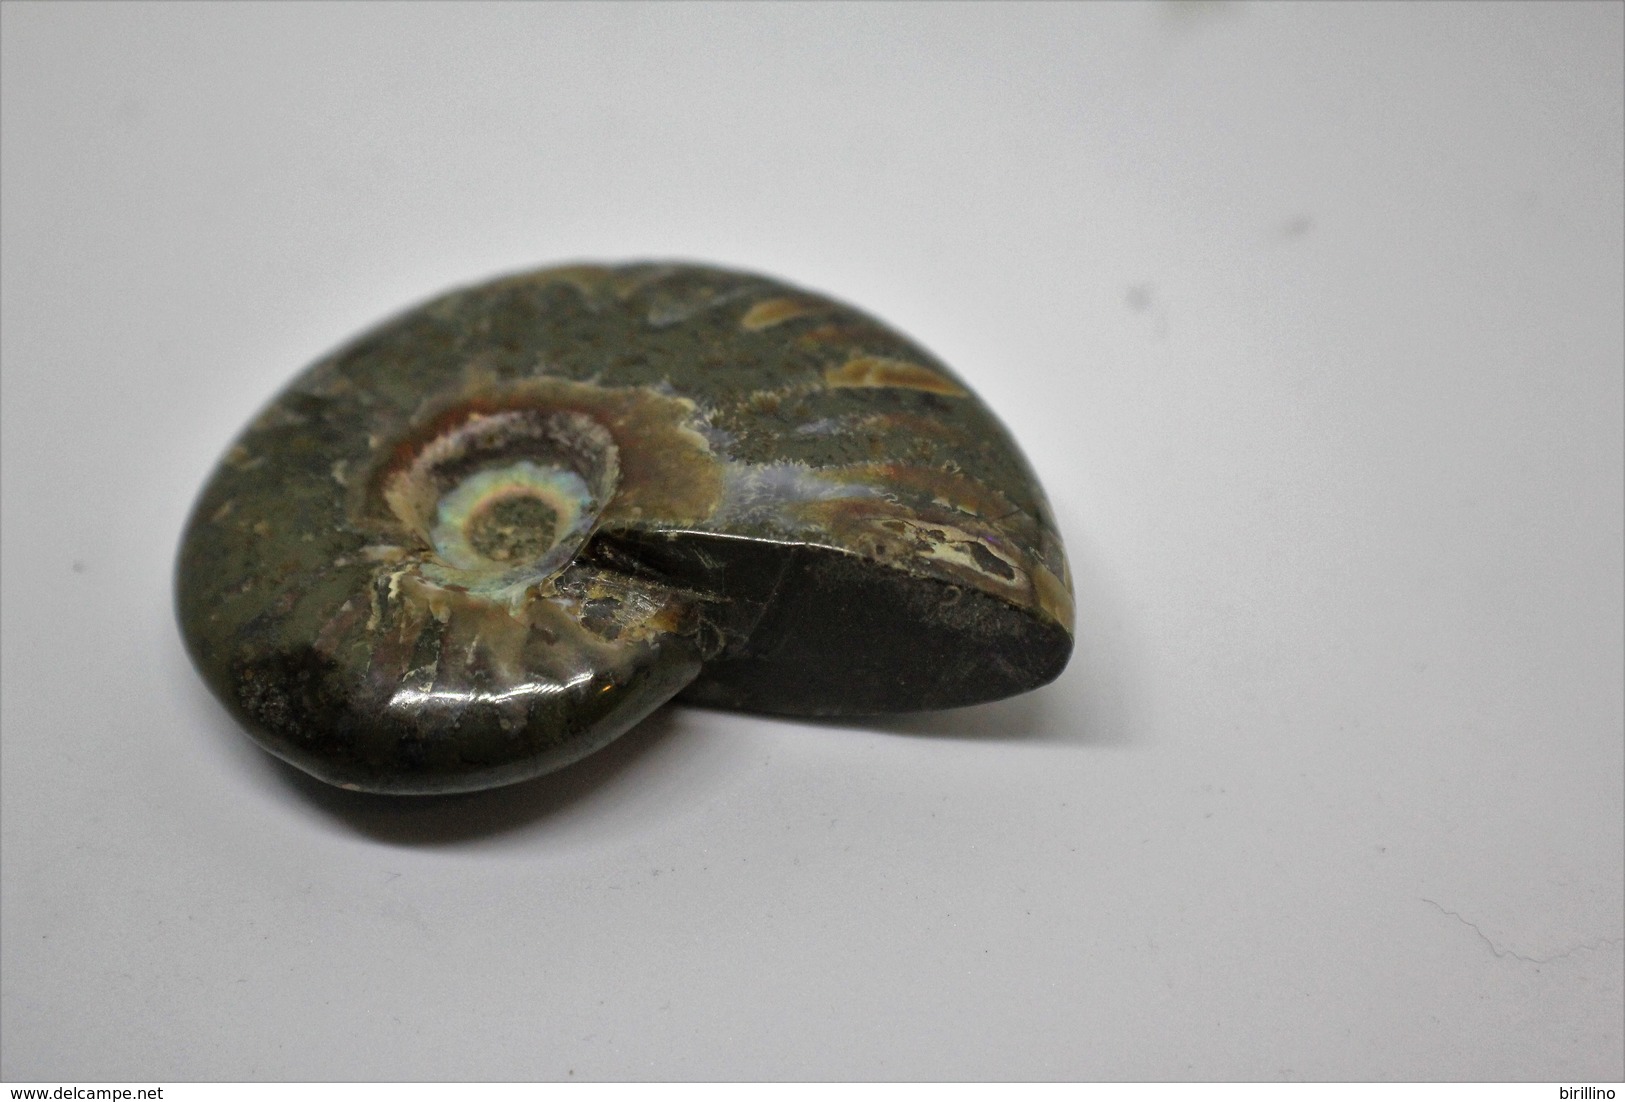 860 - Raro fossile di ammonite iridescente naturale - Provenienza Madagascar Peso 77 gr